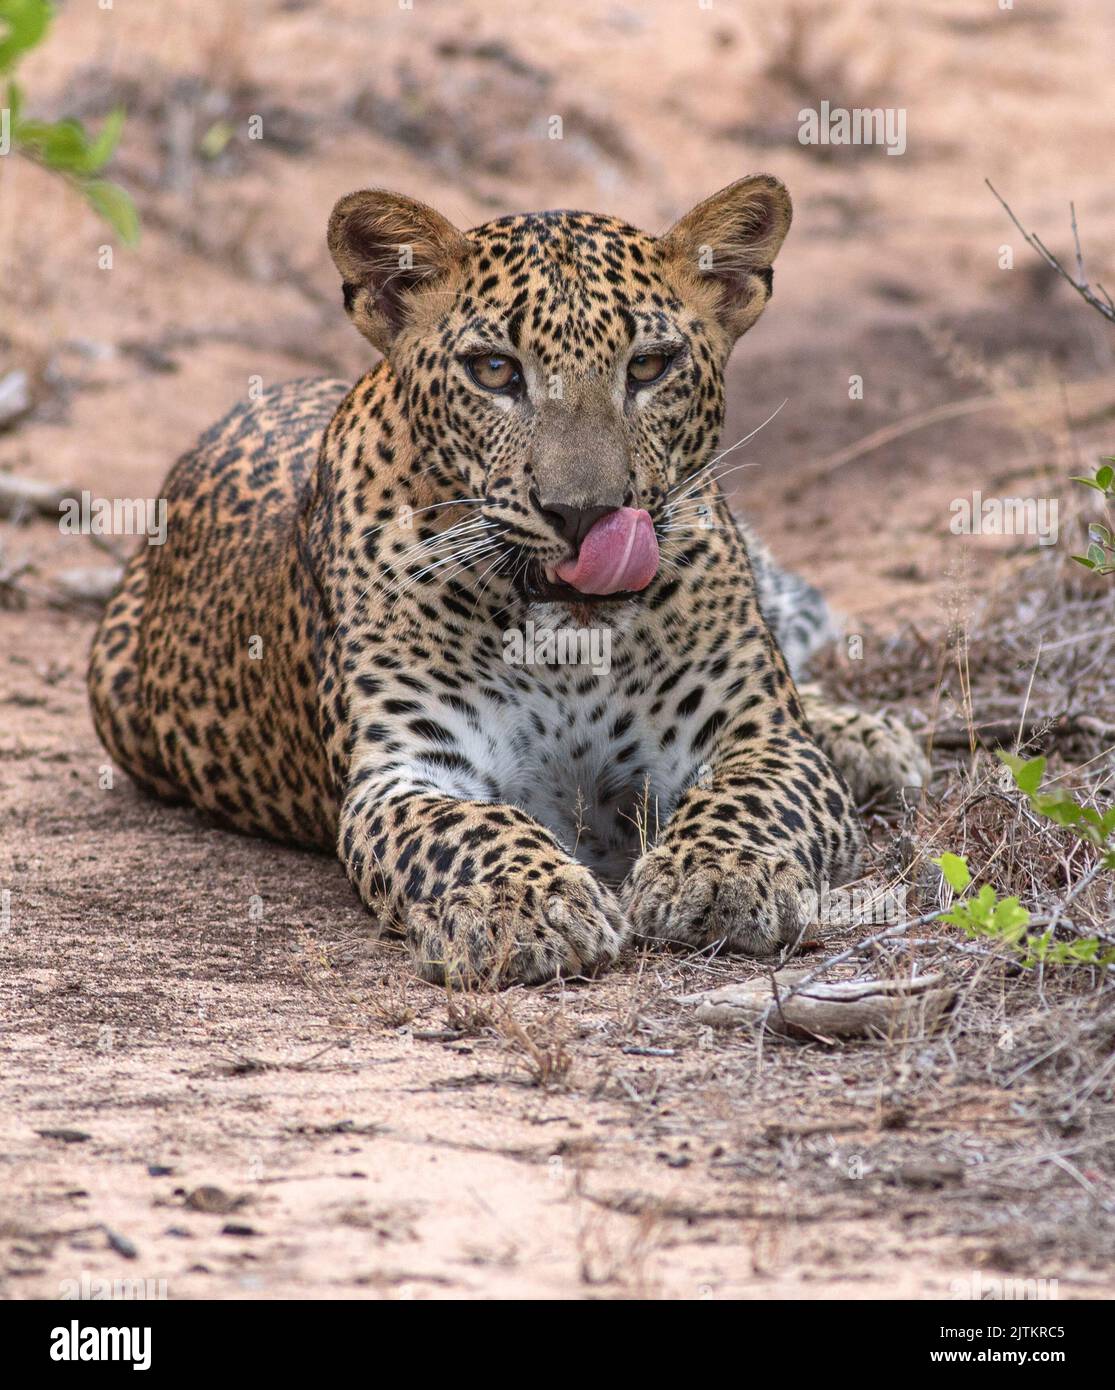 Bâillements de léopards; bâillements de léopards; bâillements de léopards; bâillements de léopards; pullères de léopard du parc national de Yala au Sri Lanka Banque D'Images